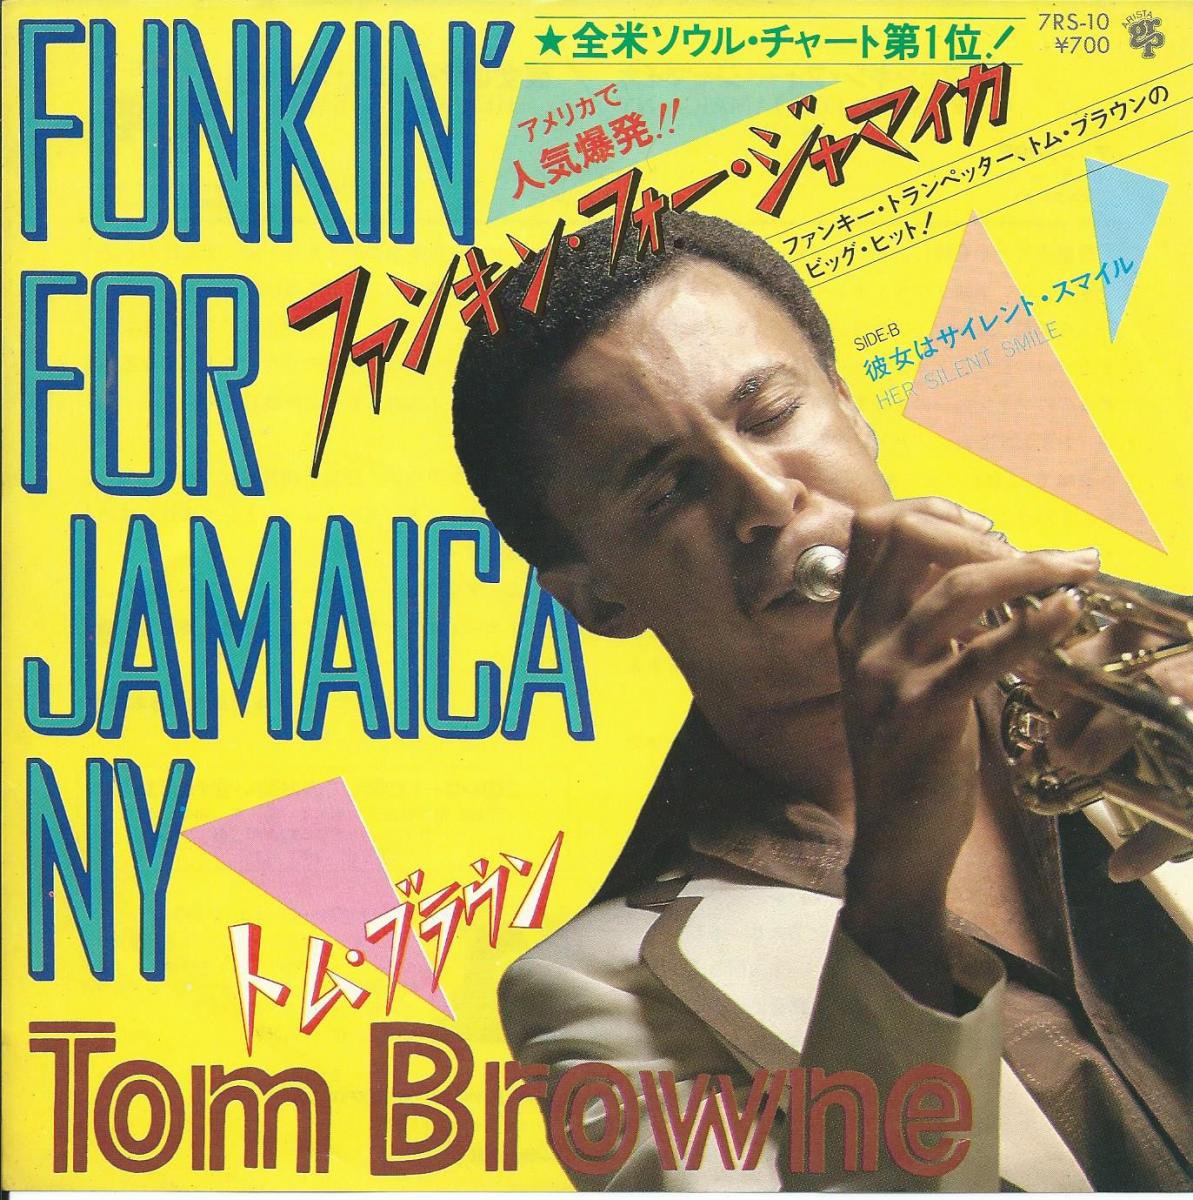 トム・ブラウン TOM BROWNE / ファンキン・フォー・ジャマイカ FUNKIN' FOR JAMAICA NY (7